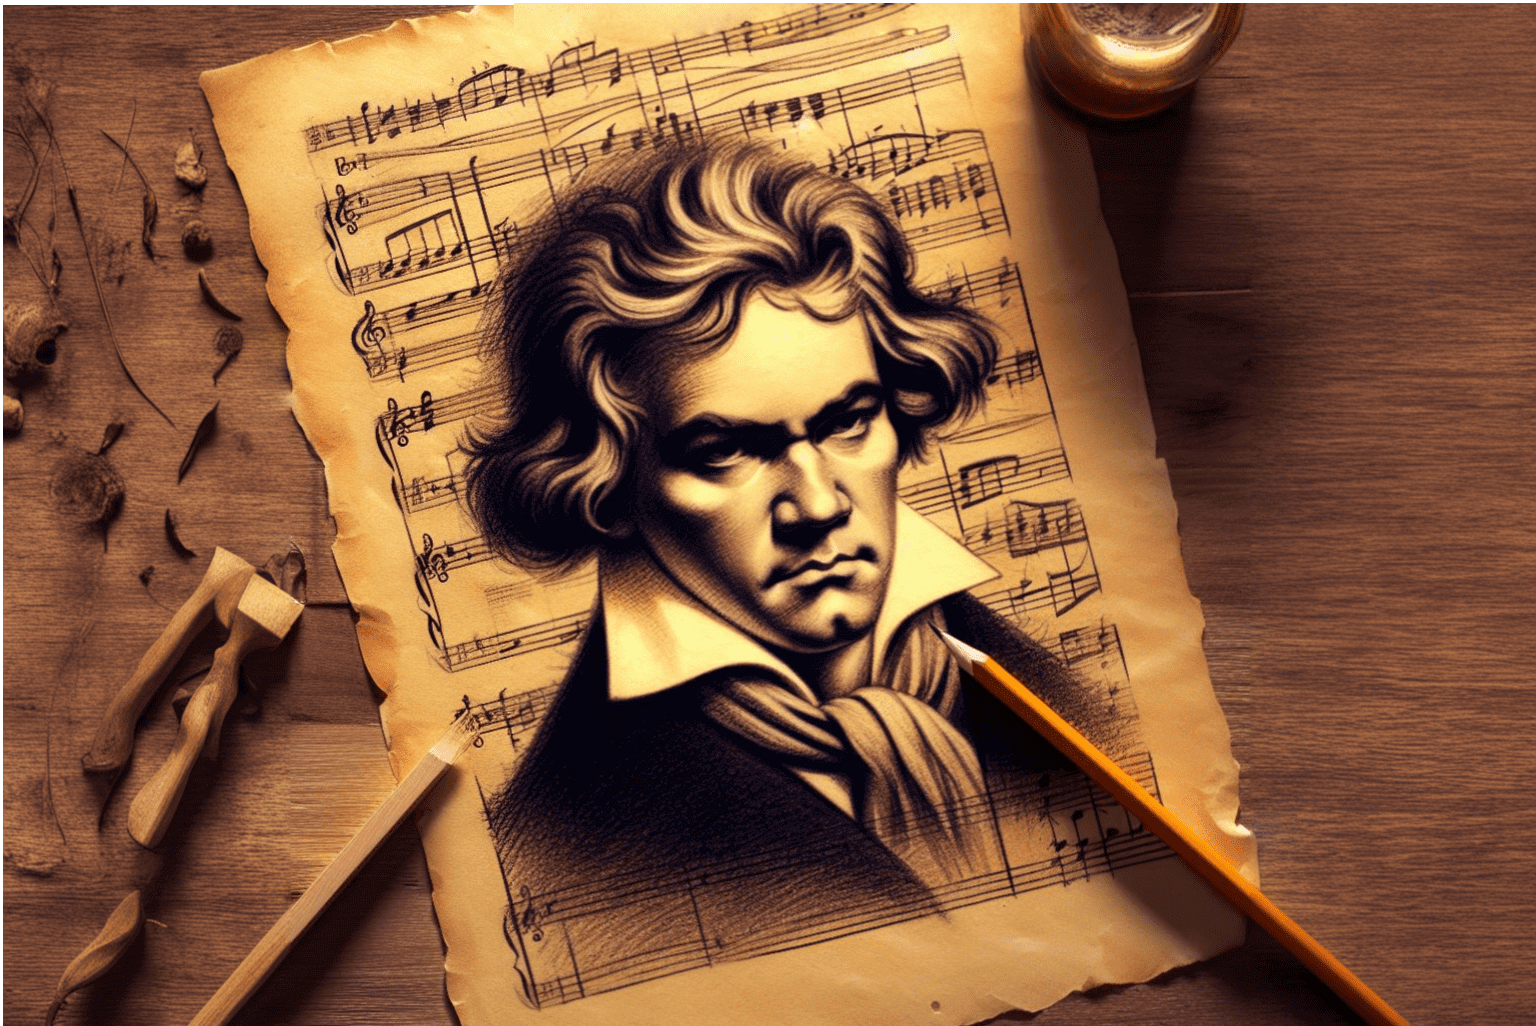 ДНК Бетховена показало, что каждый может стать музыкальным гением. Ученые исследовали ДНК Бетховена, чтобы оценить его музыкальные способности. Фото.